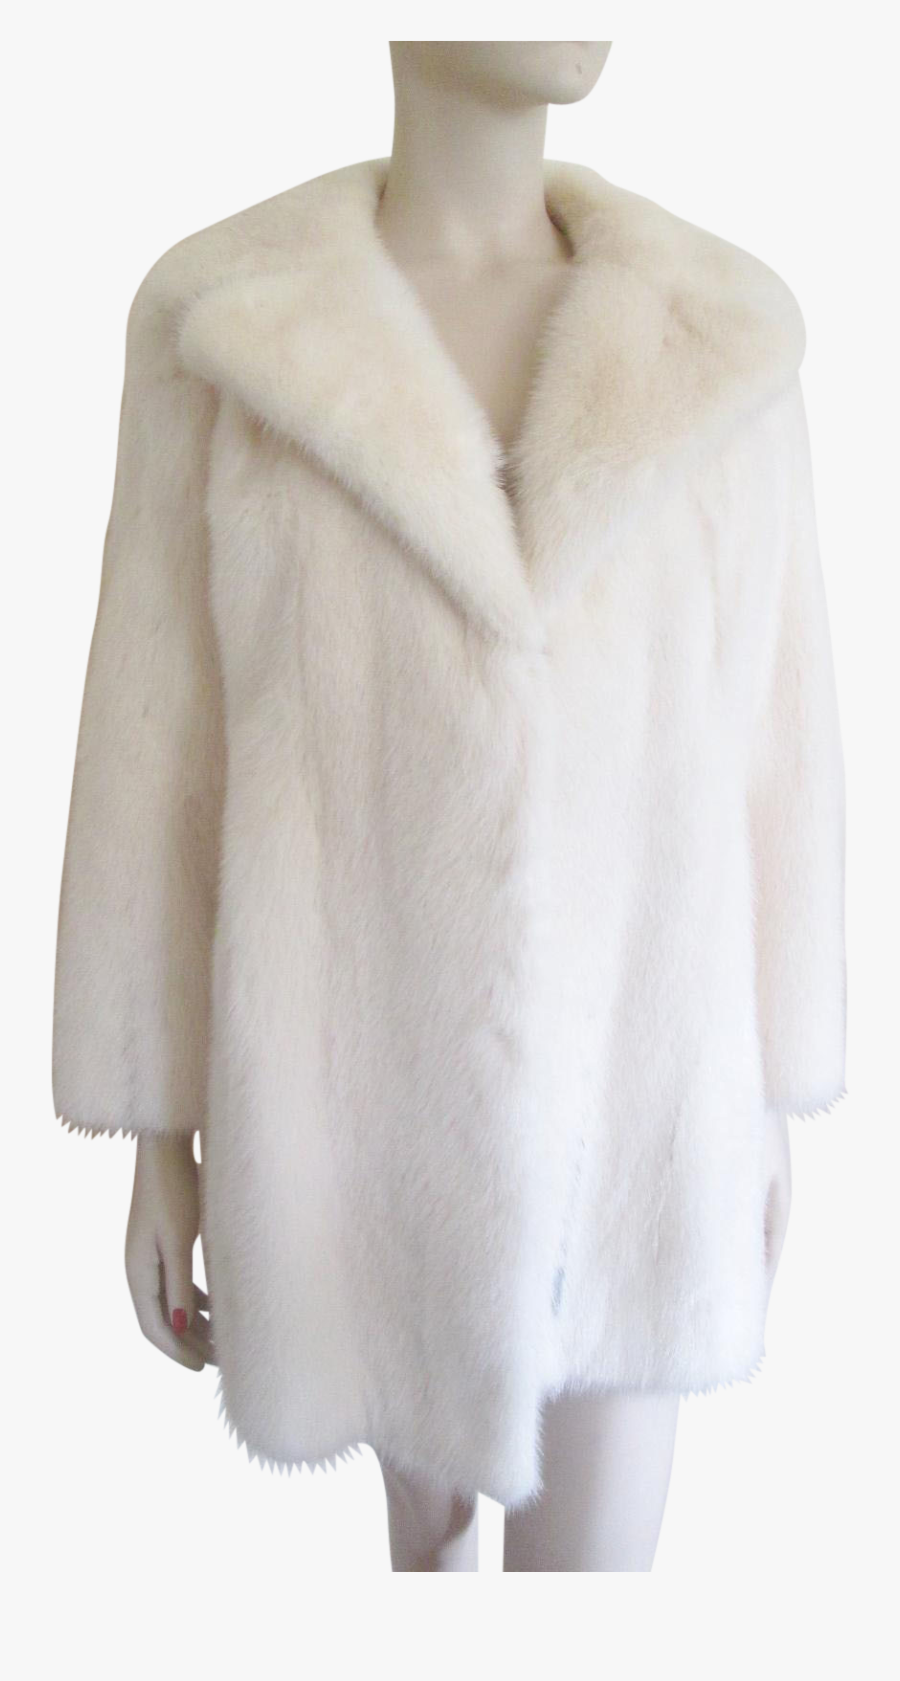 Fur Coats White Png Image - White Fur Coat Vintage, Transparent Clipart